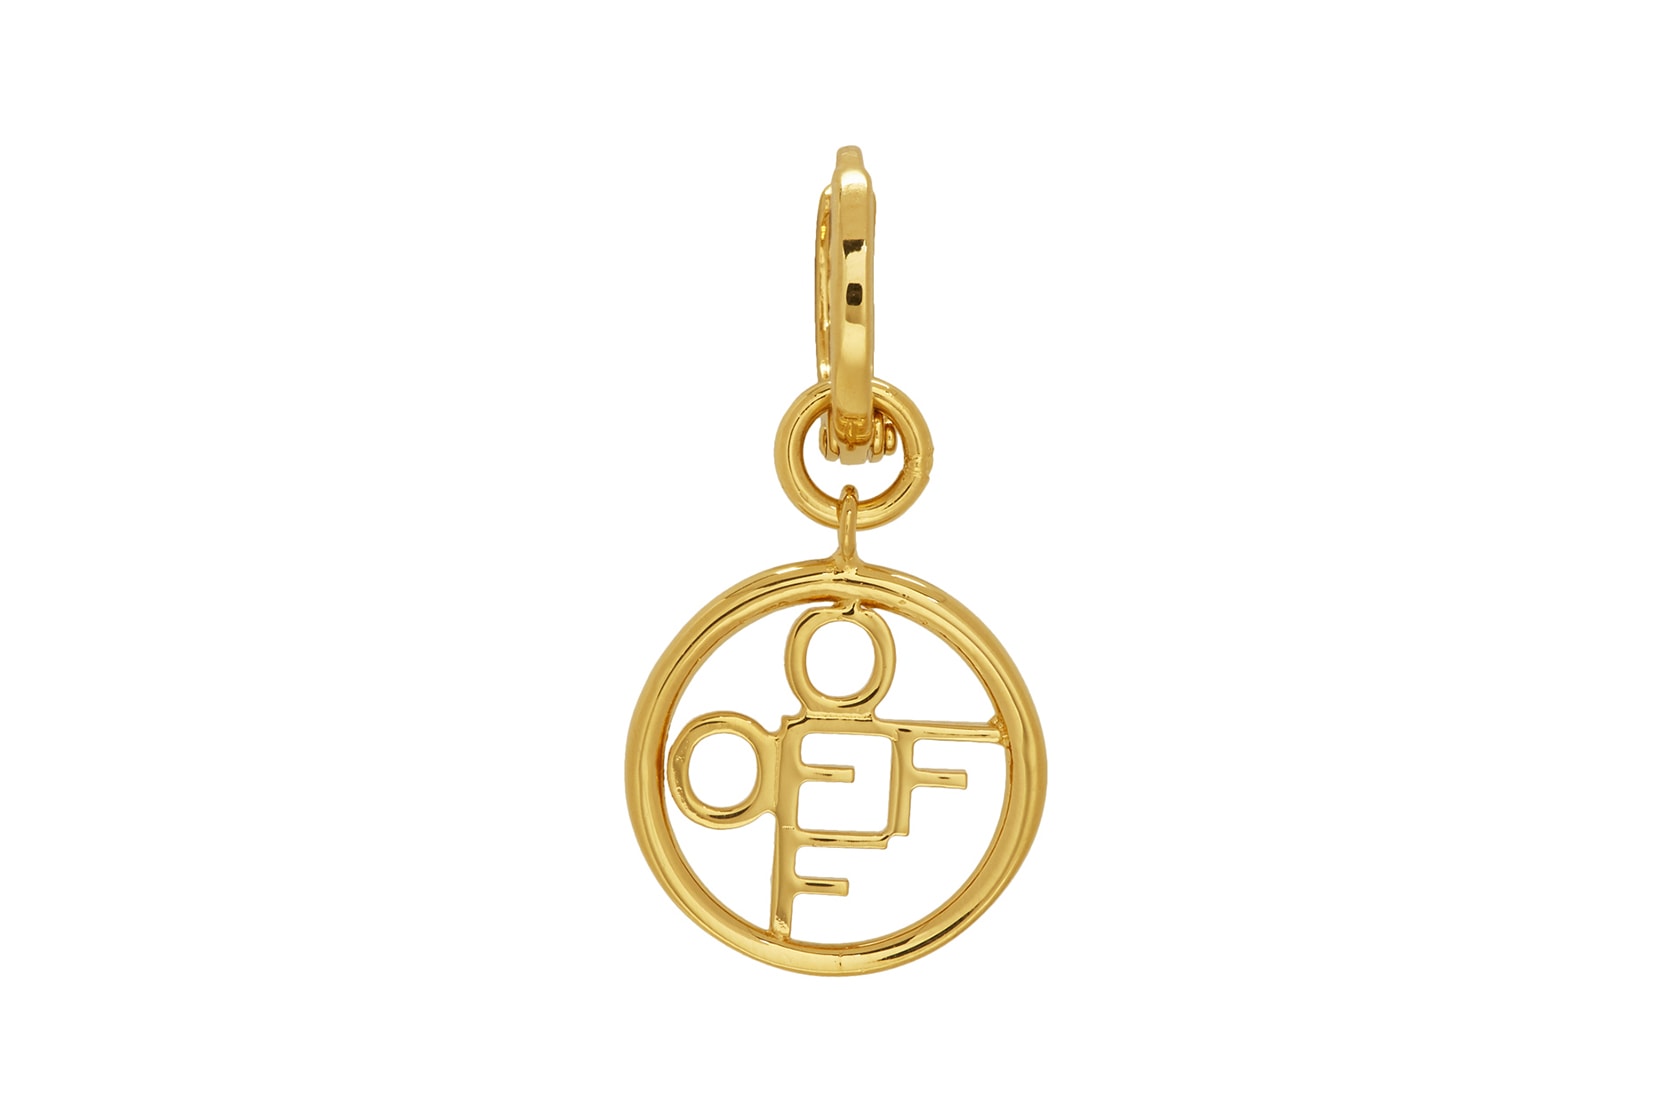 off-white earrings jewelry cross logo gold